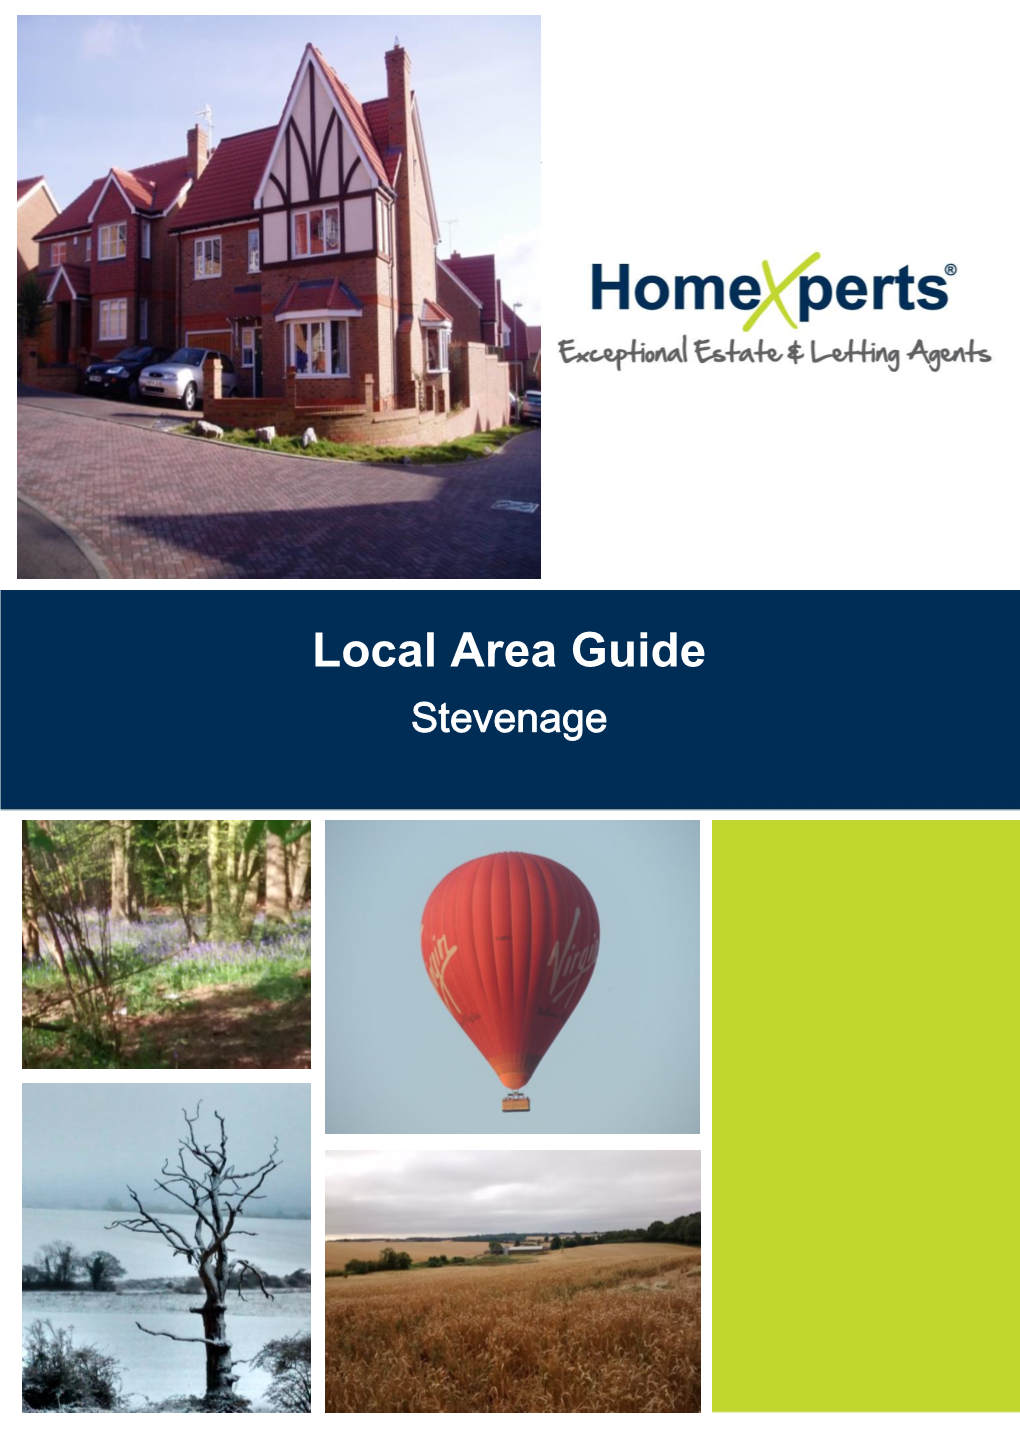 Local Area Guide – Stevenage